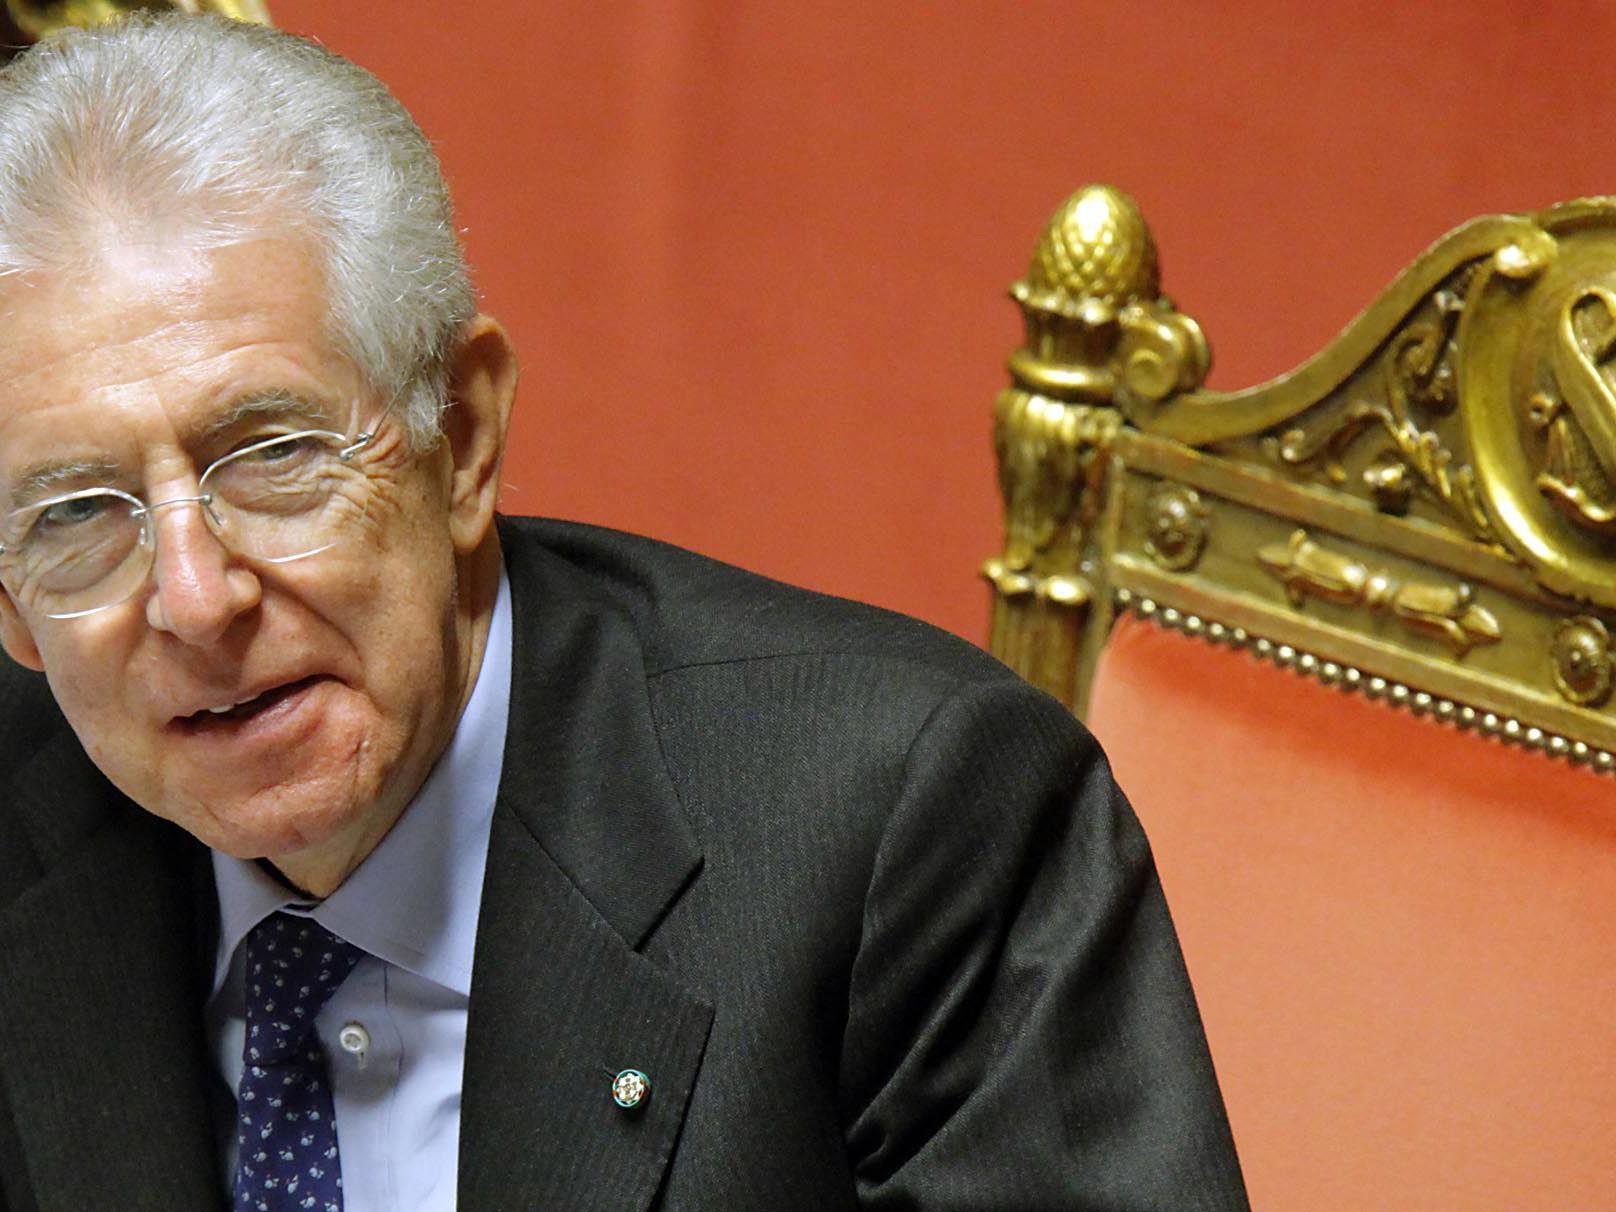 Premier Mario Monti genießt das Vertrauen der Abgeordneten